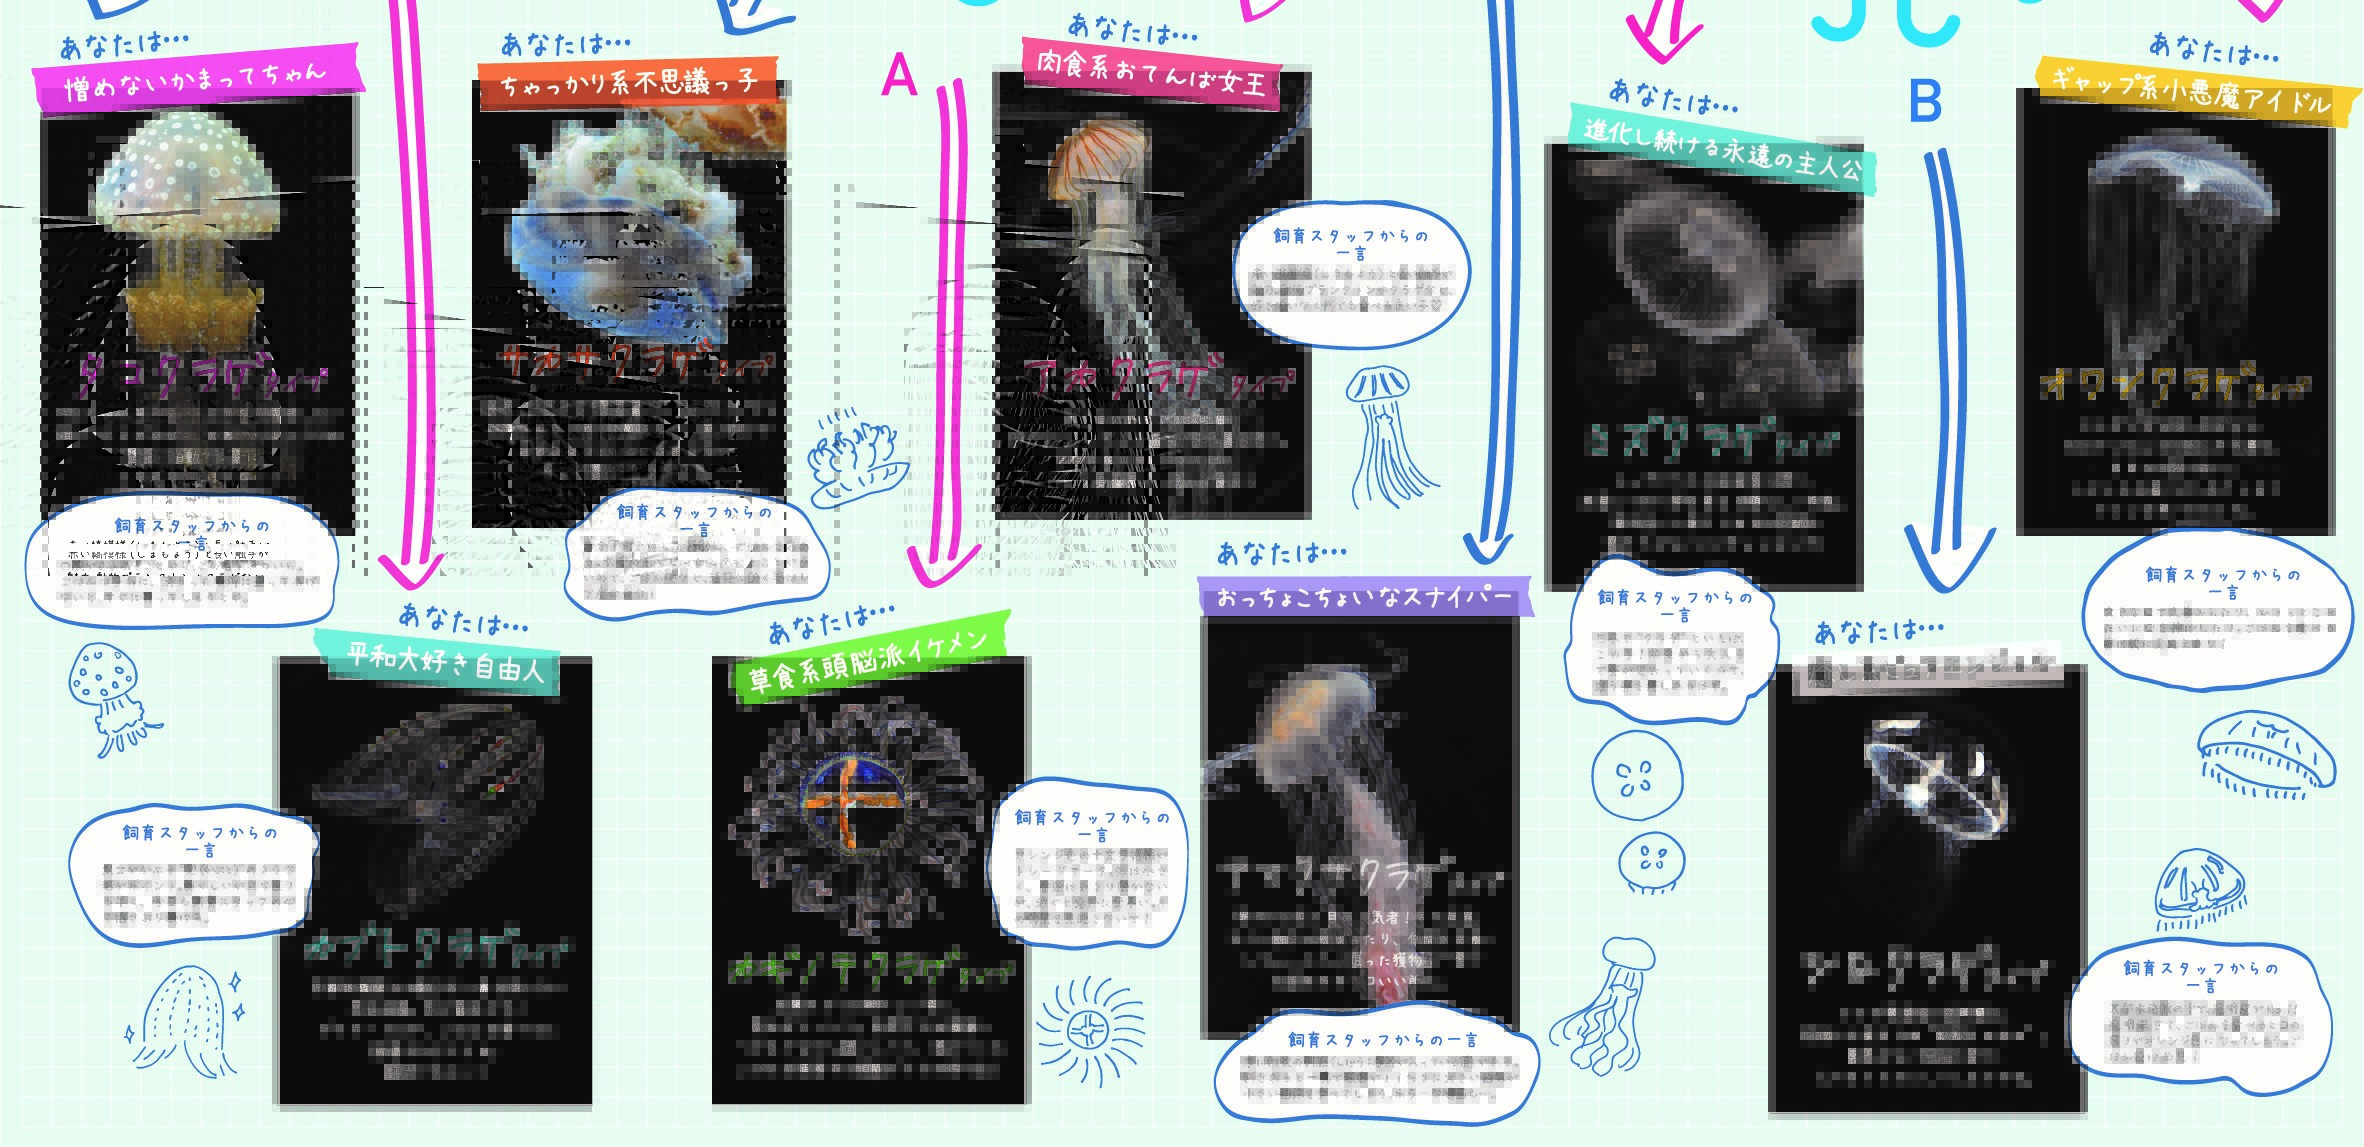 京都水族館 あなたは何クラゲ 京都水族館オリジナルのクラゲ別キャラ診断を作ってみました Lineトーク画面の下のメニュー クラゲ別キャラ診断 をタップしてスタートです 診断はこちら T Co Fairxih1f7 クラゲ診断 T Co